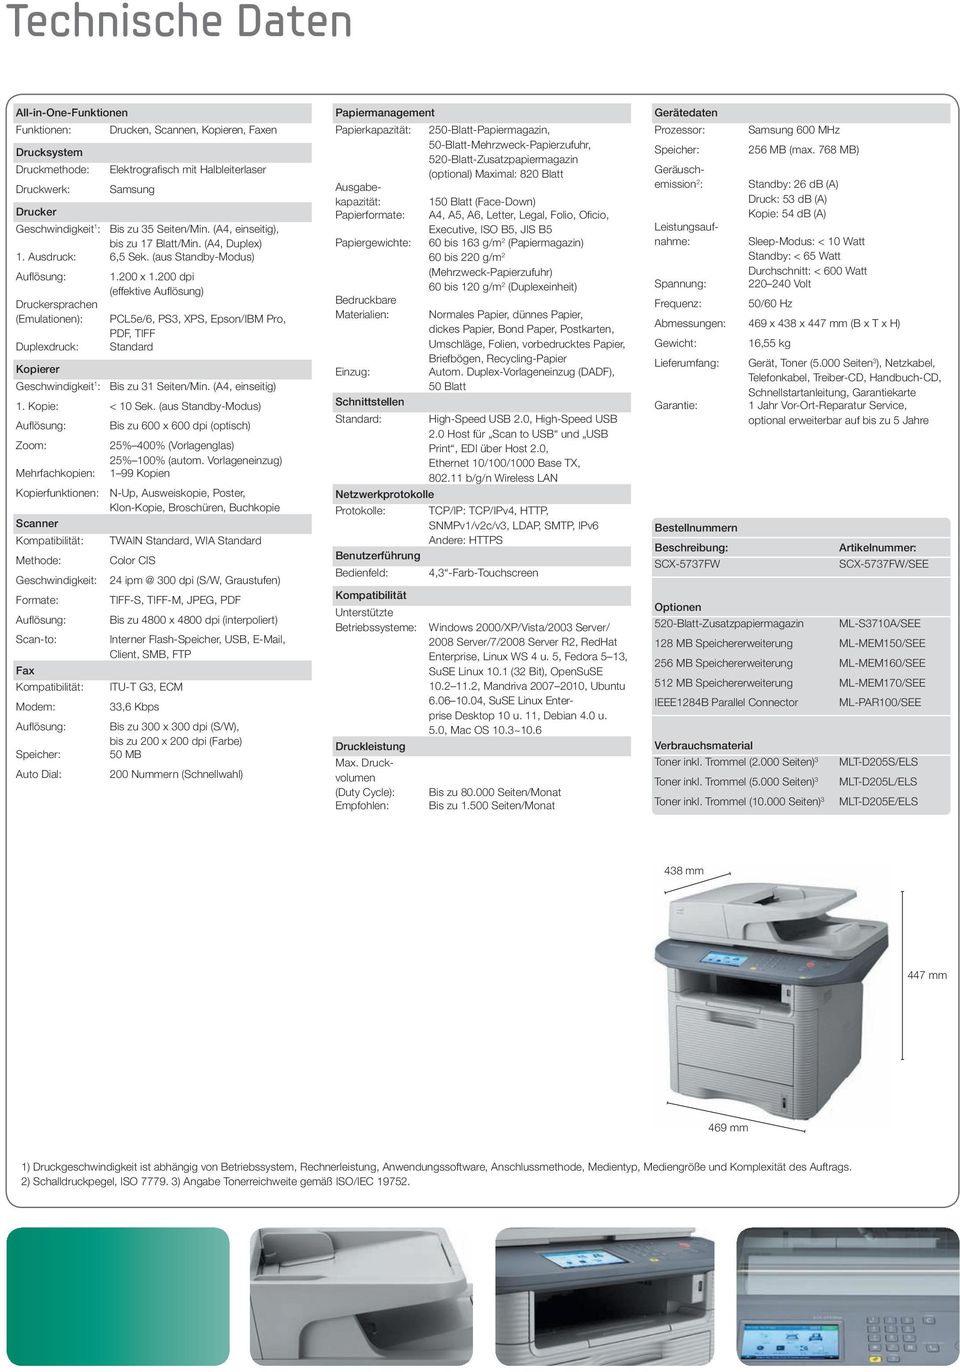 200 dpi (effektive Auflösung) Druckersprachen (Emulationen): PCL5e/6, PS3, XPS, Epson/IBM Pro, PDF, TIFF Duplexdruck: Standard Kopierer Geschwindigkeit 1 : Bis zu 31 Seiten/Min. (A4, einseitig) 1.